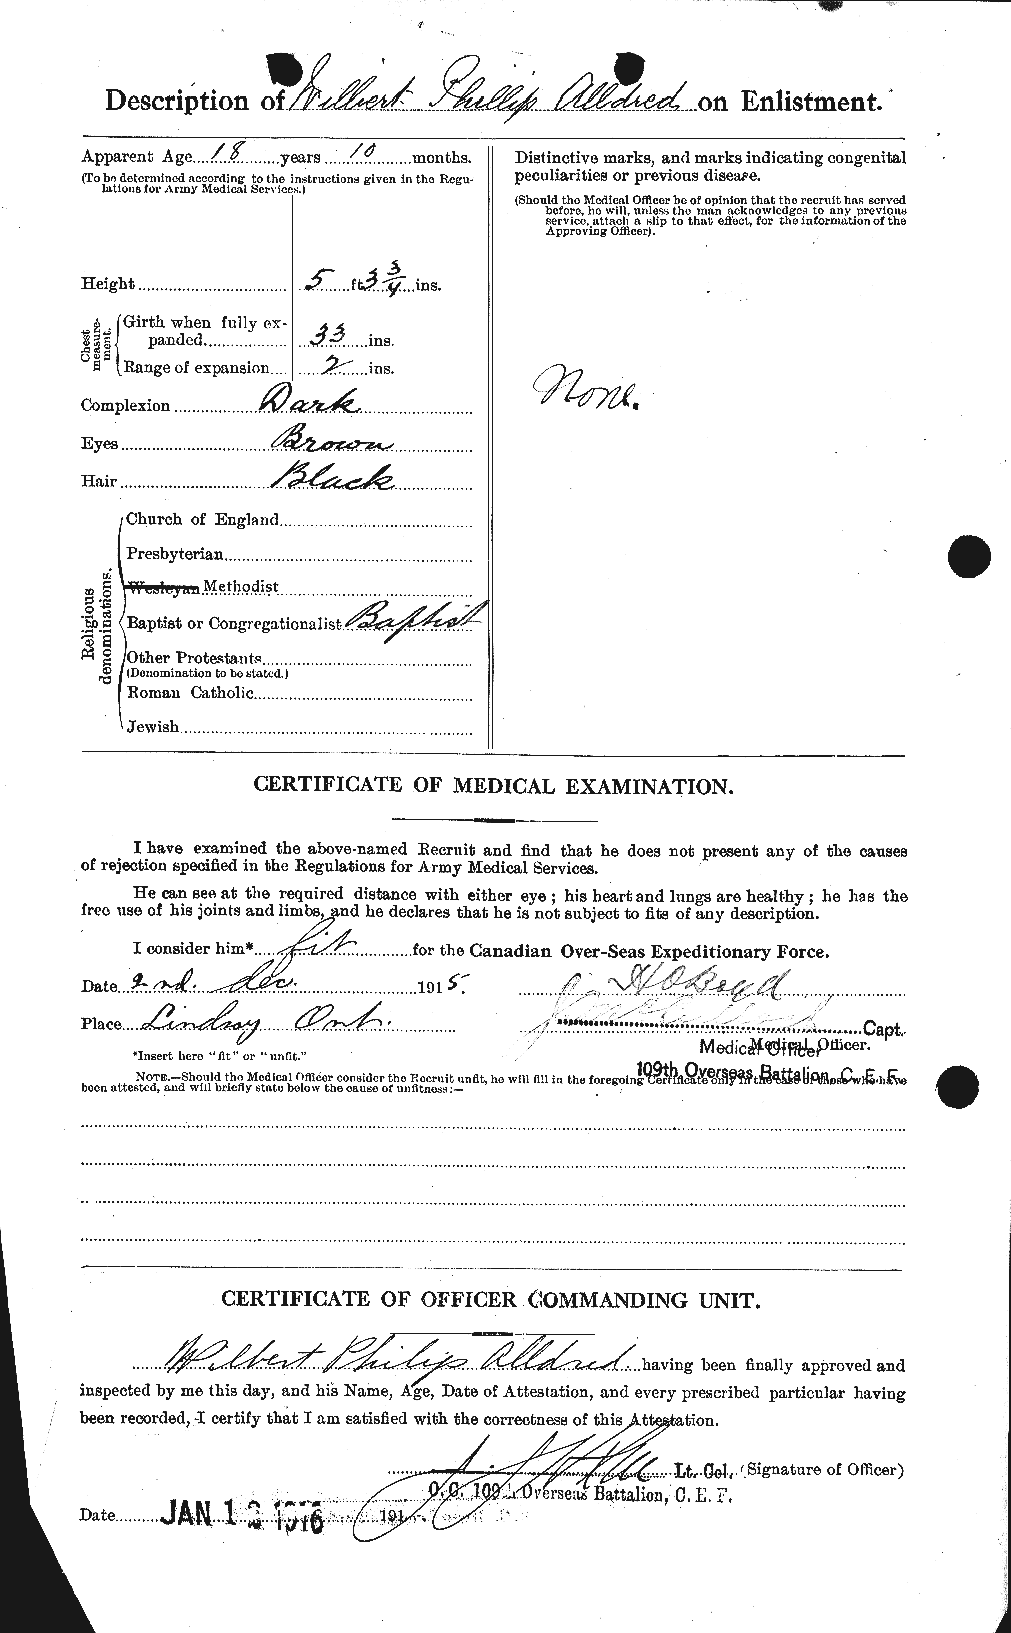 Dossiers du Personnel de la Première Guerre mondiale - CEC 205726b